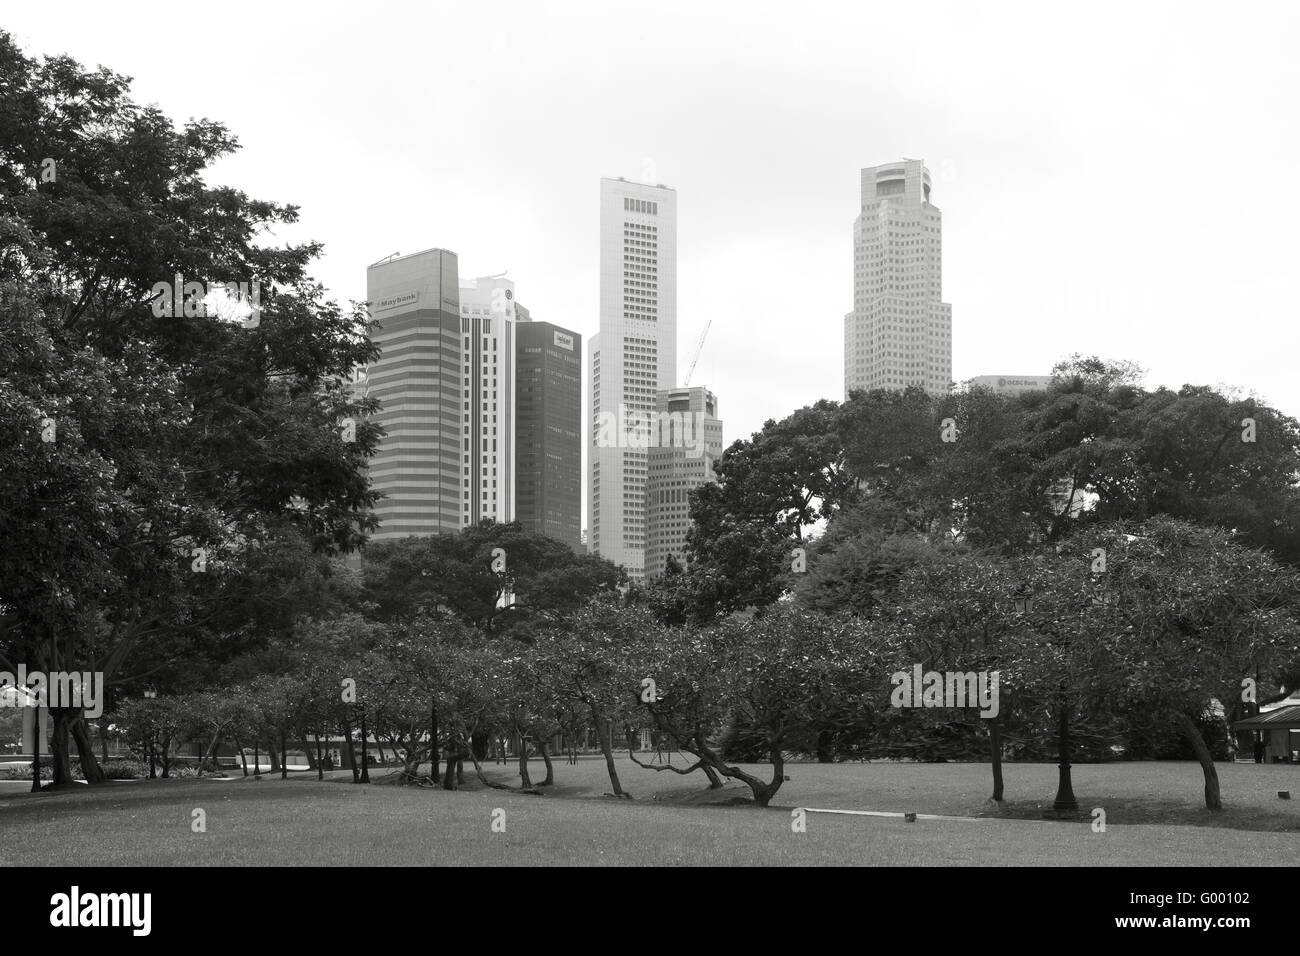 Les images en noir et blanc de Marina Bay Sands, Singapour Banque D'Images